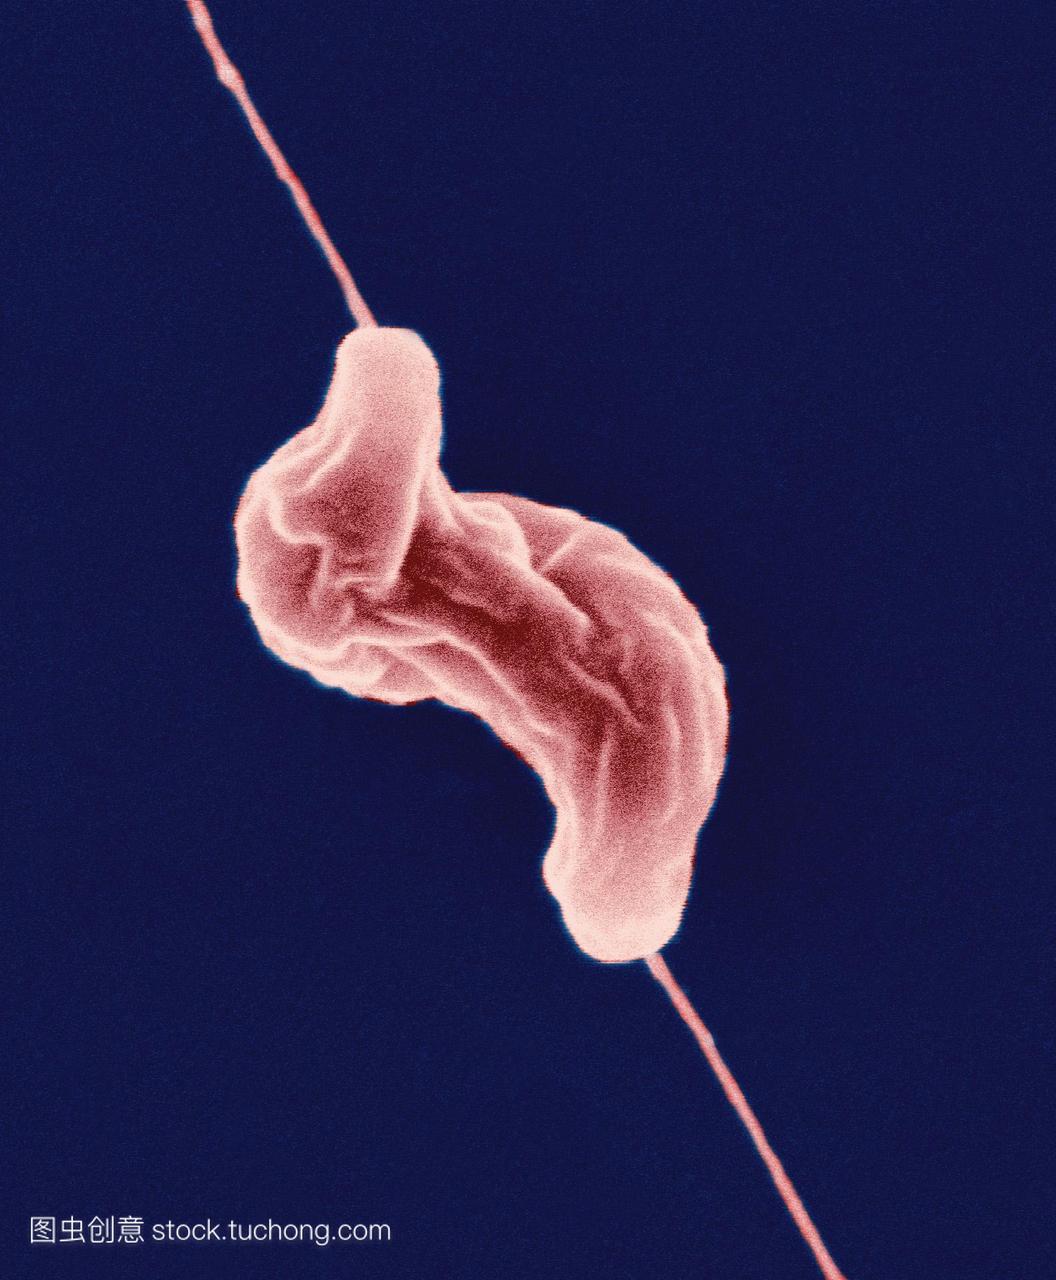 空肠弯曲杆菌细菌。彩色扫描电子显微照片se